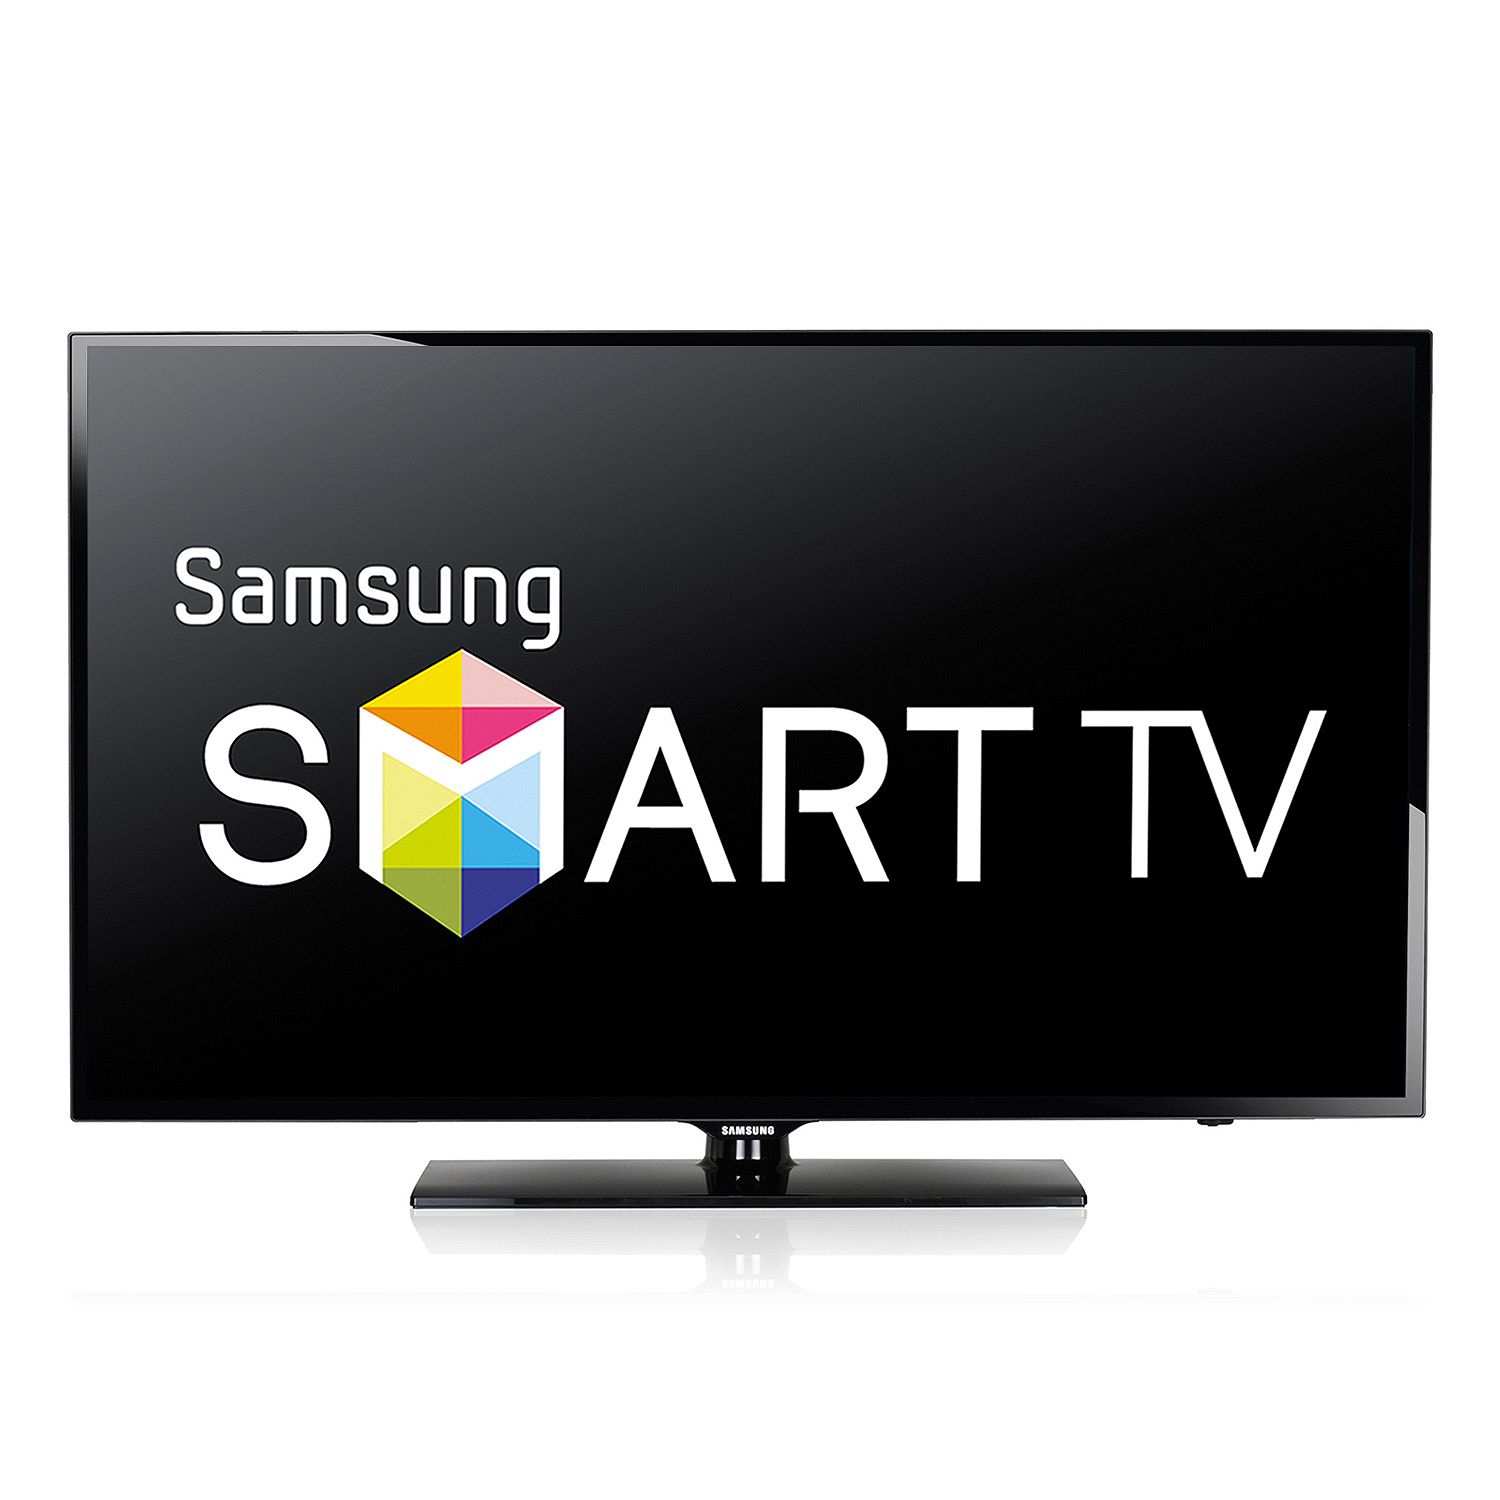 Купить телевизор самсунг смарт тв в москве. Смарт ТВ Samsung. Телевизор Samsung Smart TV. Самсунг смарт ТВ 32. Led телевизор Samsung смарт.